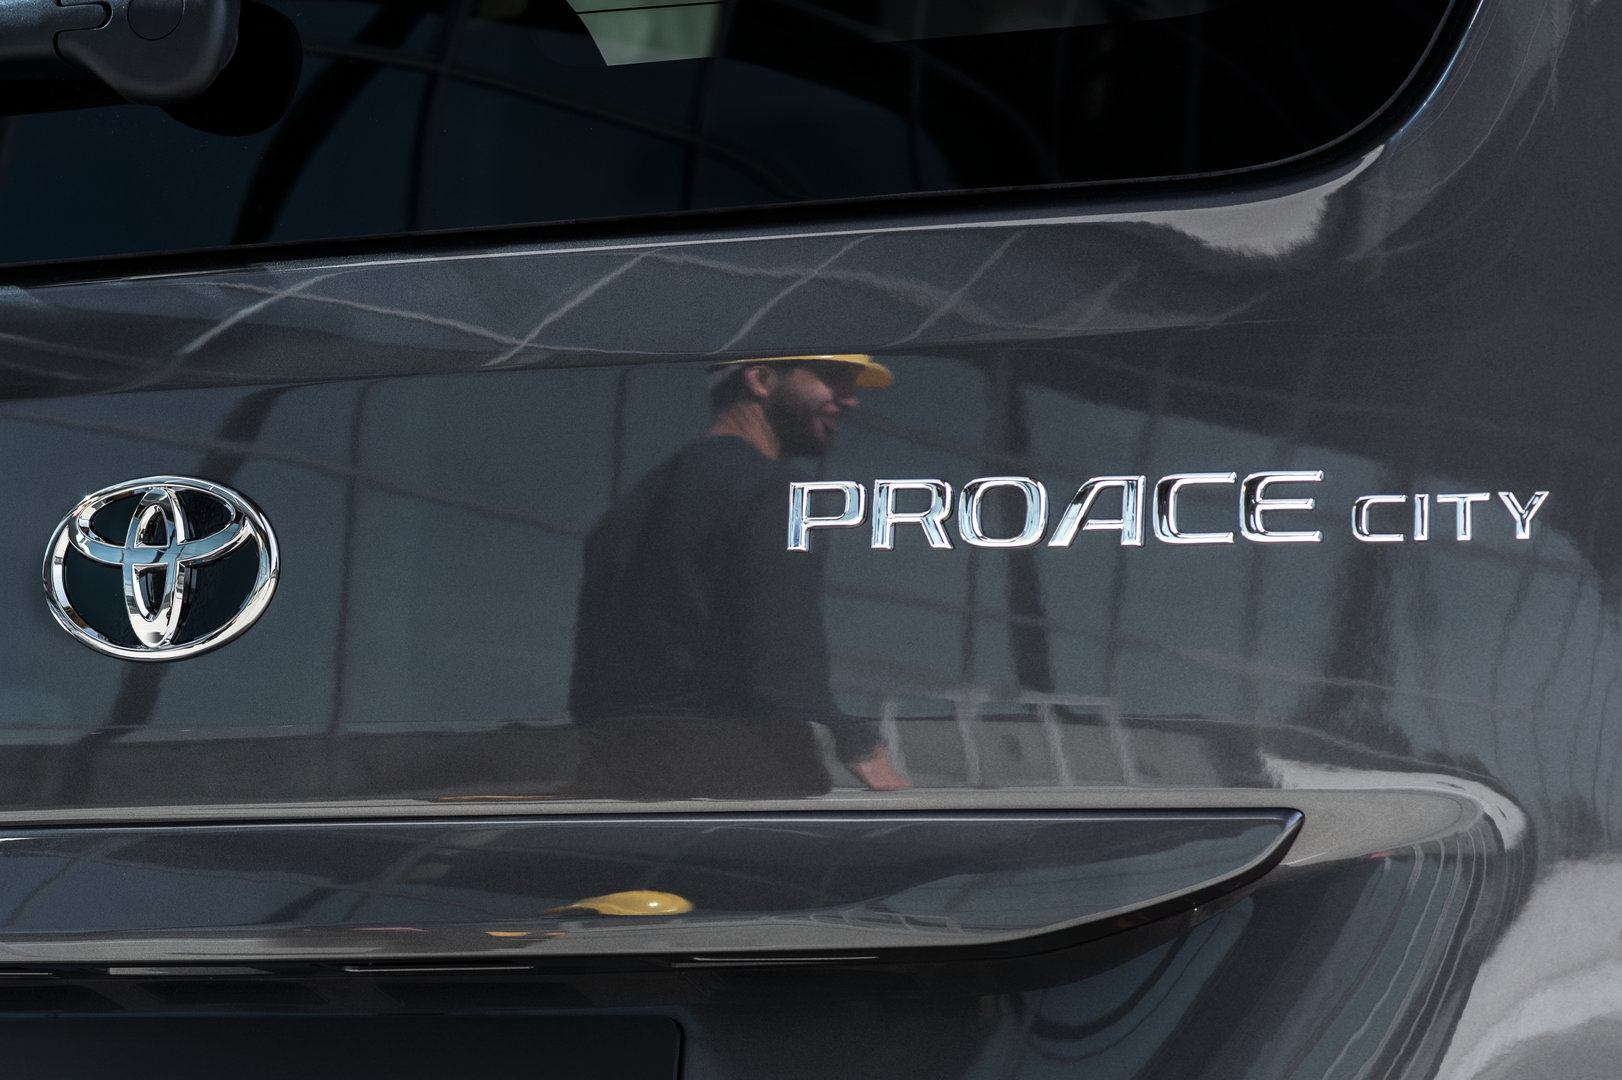 Toyota Proace City, así se llamará la nuevo “furgo” hecha en Vigo